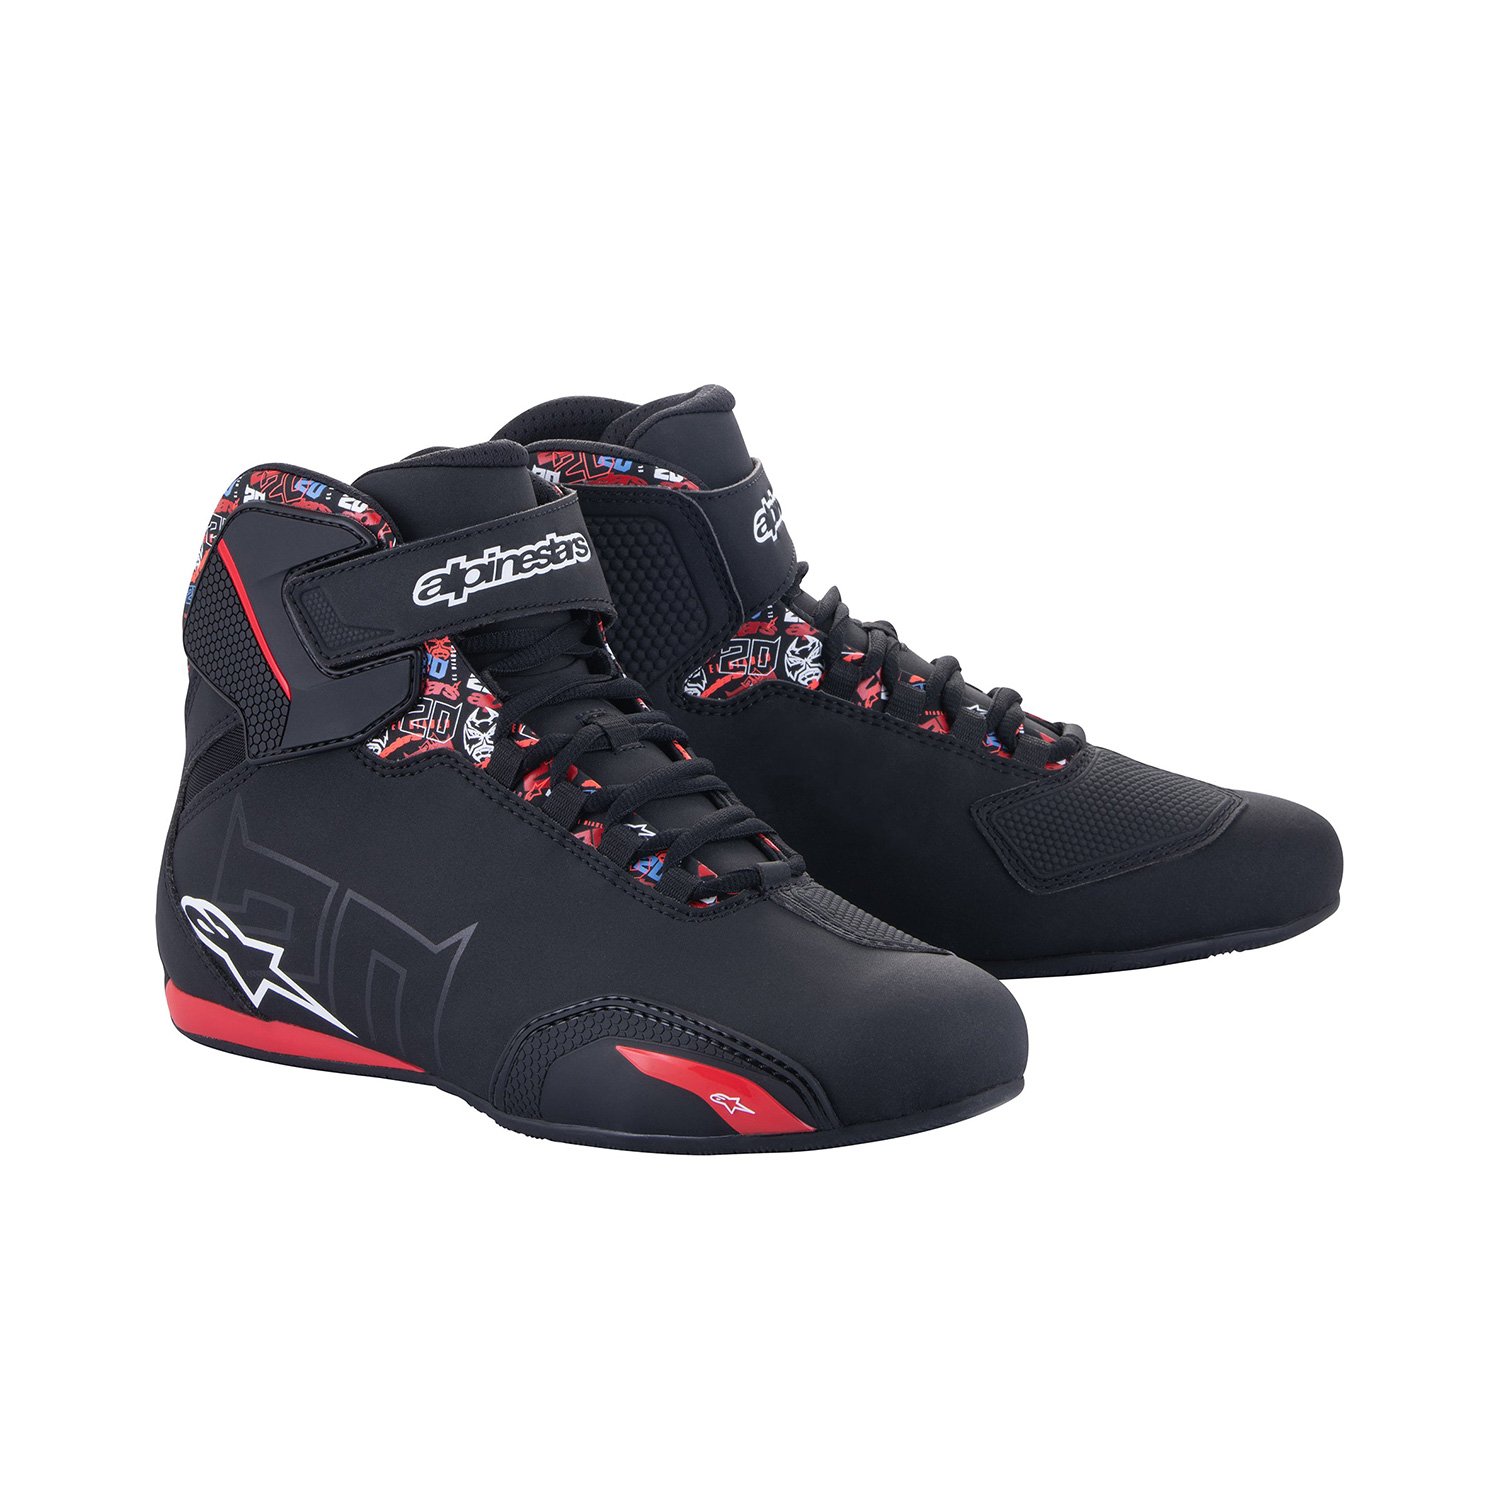 Image of Alpinestars FQ20 Sektor Shoes Black Bright Red Size US 8 EN